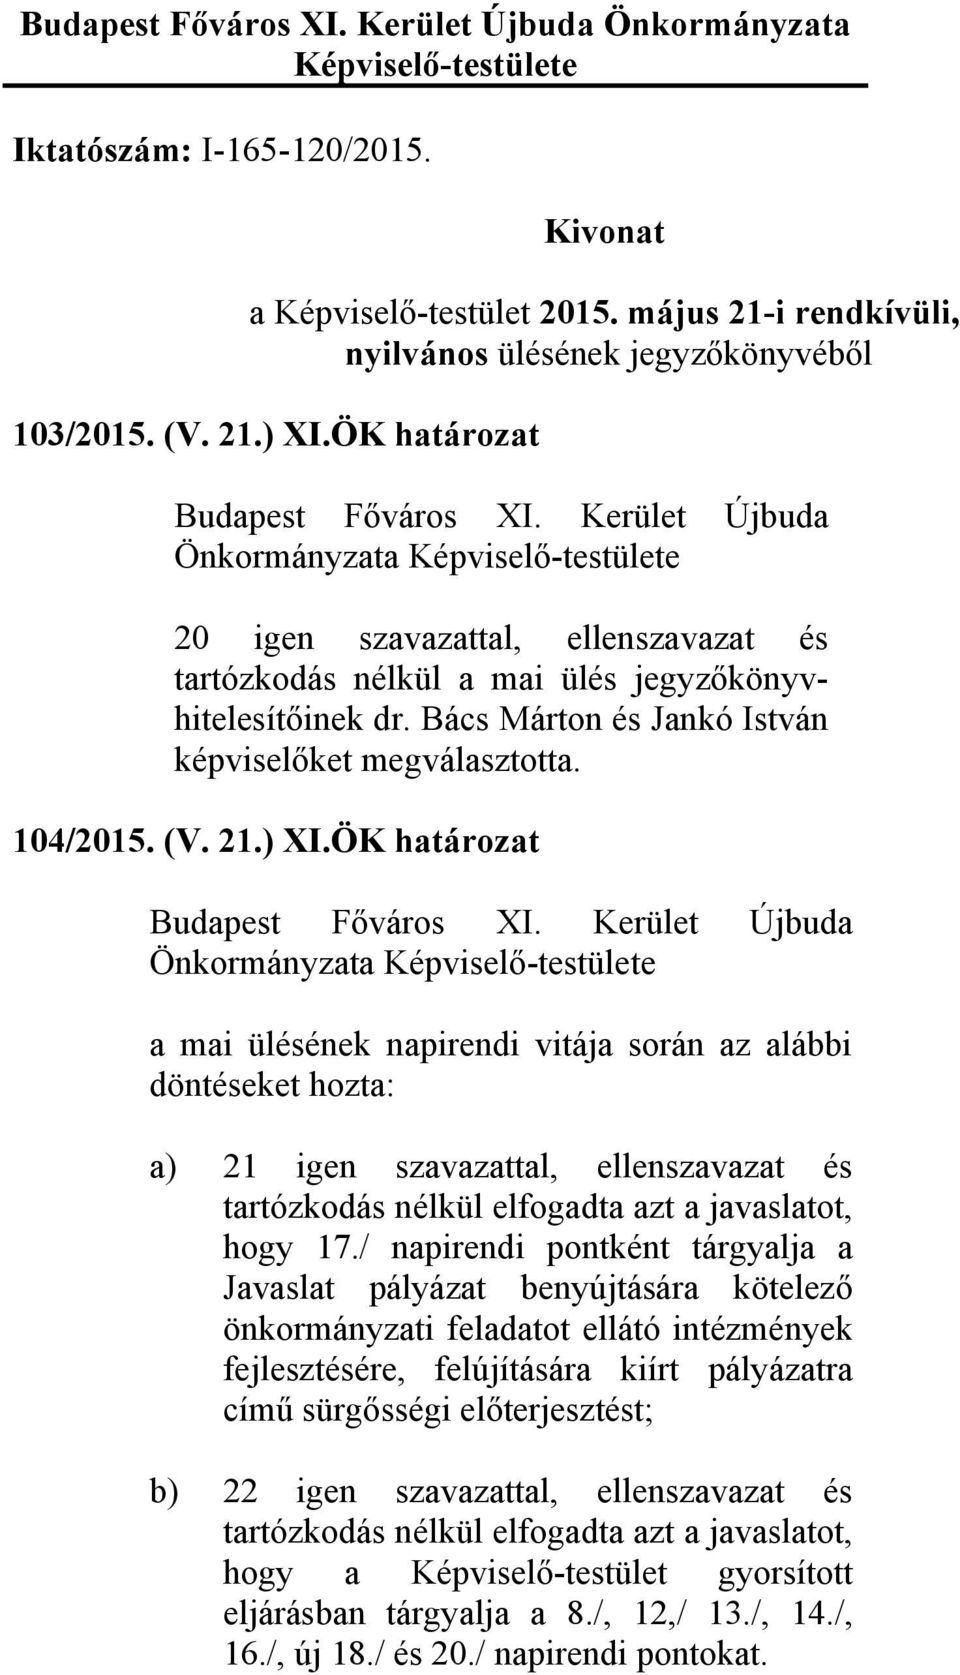 ÖK határozat a mai ülésének napirendi vitája során az alábbi döntéseket hozta: a) 21 igen szavazattal, ellenszavazat és tartózkodás nélkül elfogadta azt a javaslatot, hogy 17.